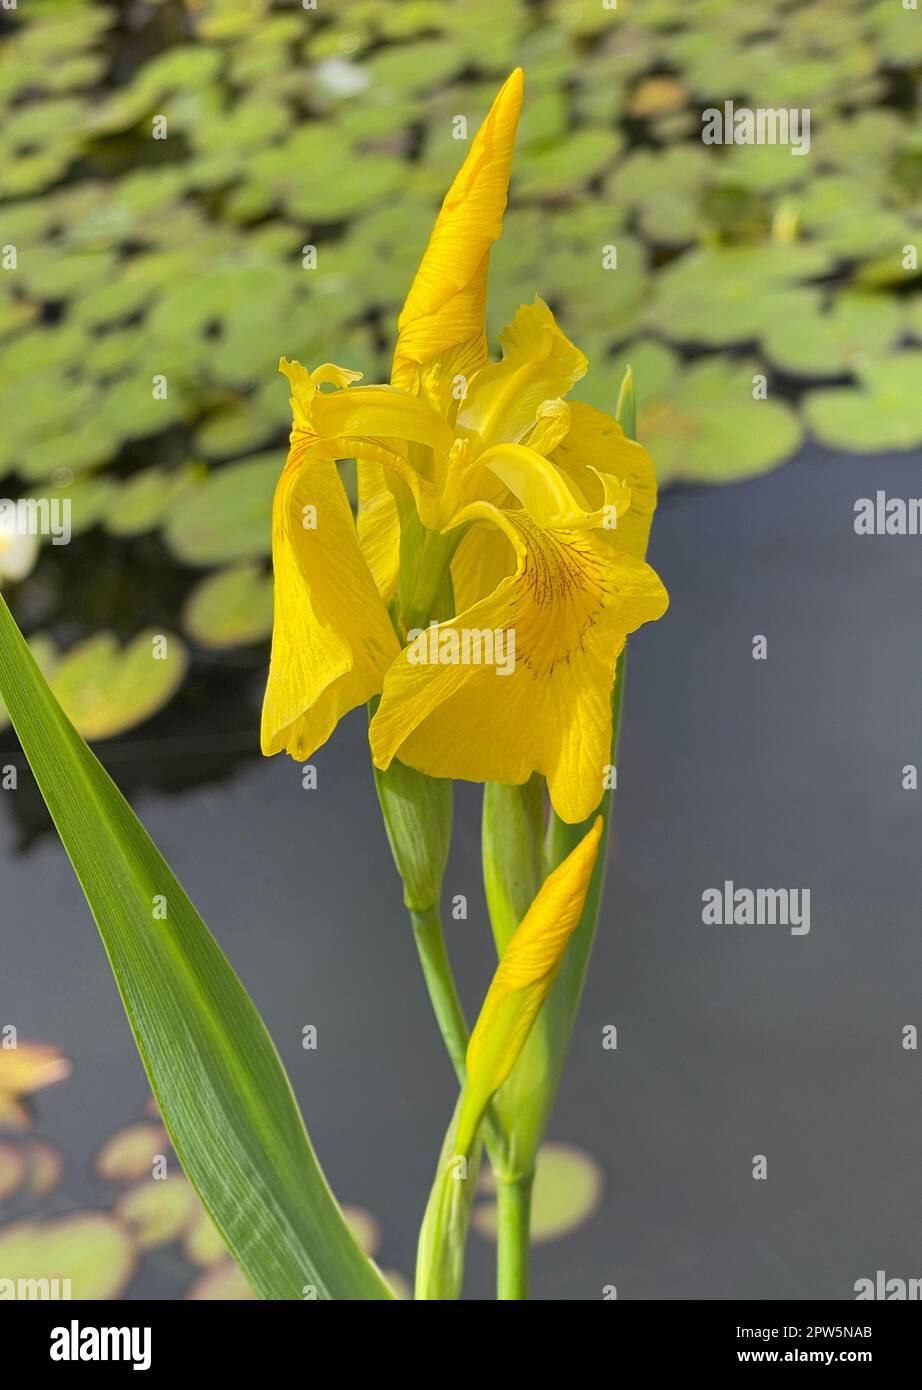 Sumpfschwertlilie, Iris pseudacorus ist eine Wasser- und Heilpföanze mit gelben Blueten. Marsh iris, Iris pseudacorus, is an aquatic and medicinal pla Stock Photo